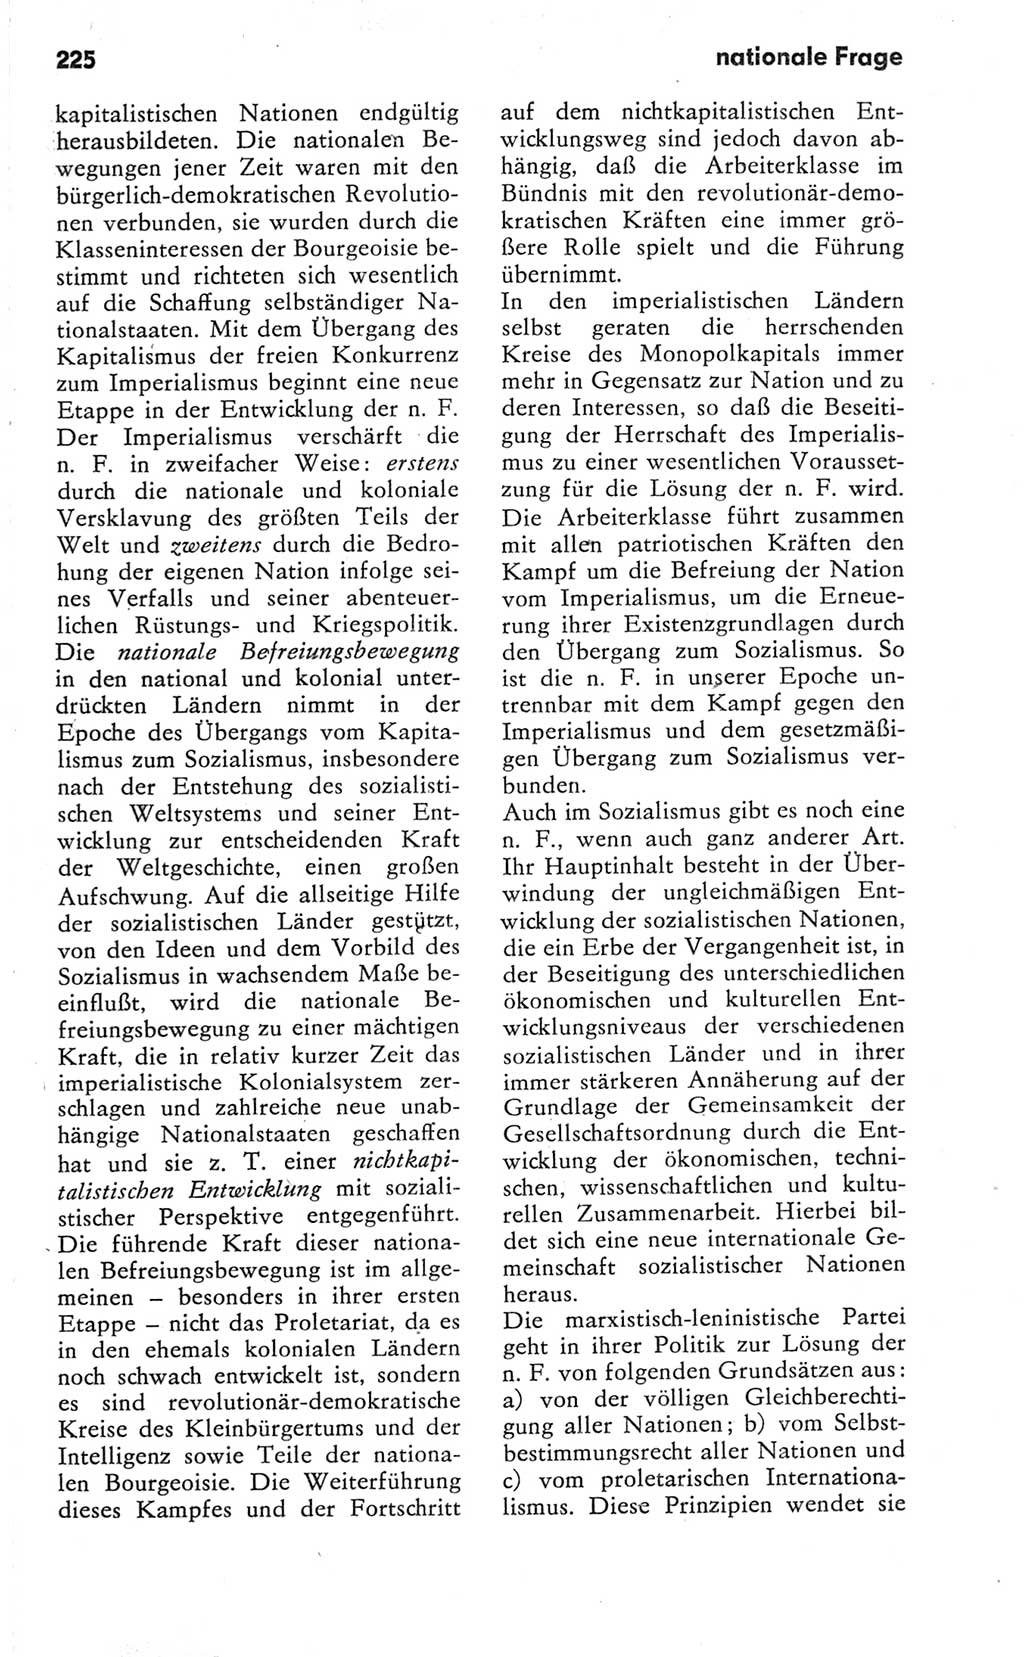 Kleines Wörterbuch der marxistisch-leninistischen Philosophie [Deutsche Demokratische Republik (DDR)] 1981, Seite 225 (Kl. Wb. ML Phil. DDR 1981, S. 225)